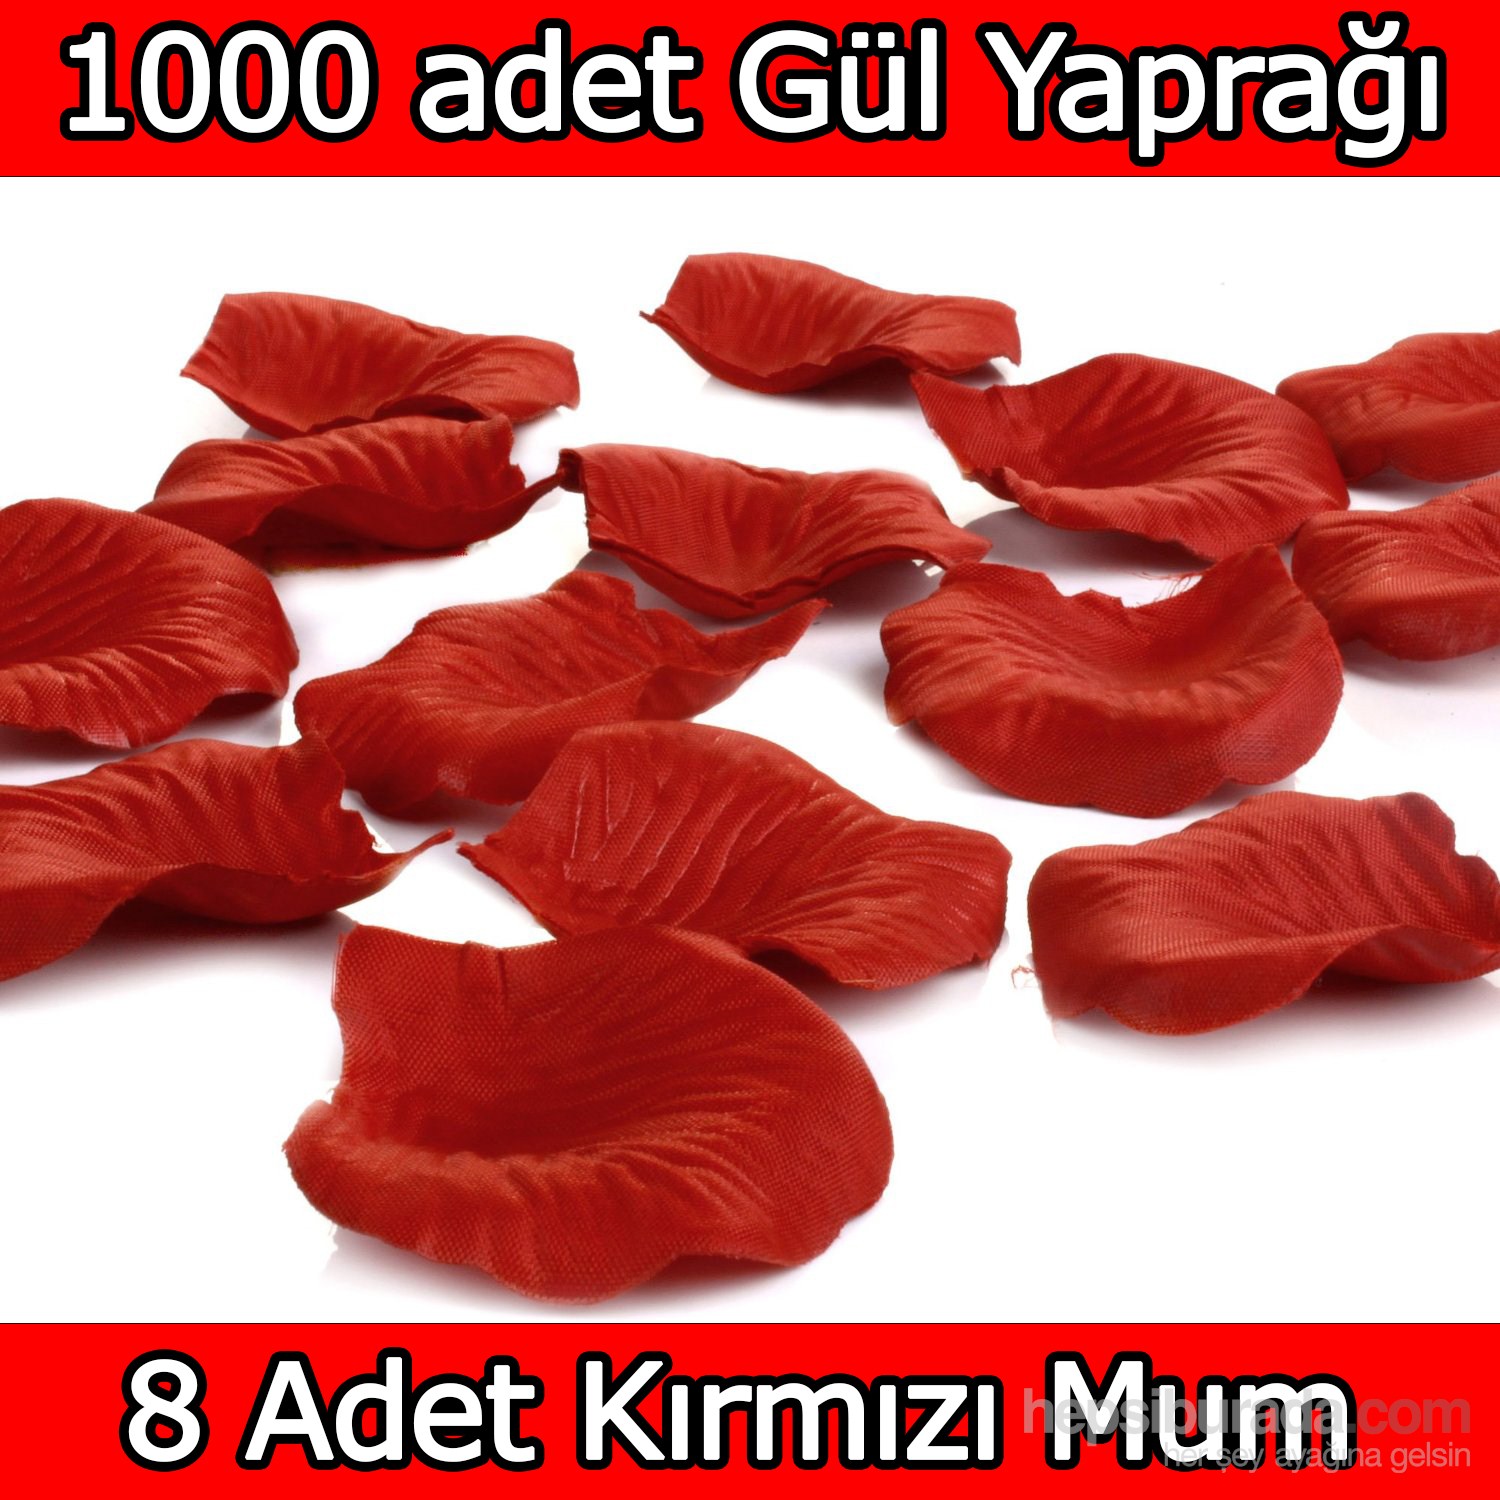 Chavin 1000 Adet Gül Yaprağı-Gül Yaprakları-Kırmızı Mum